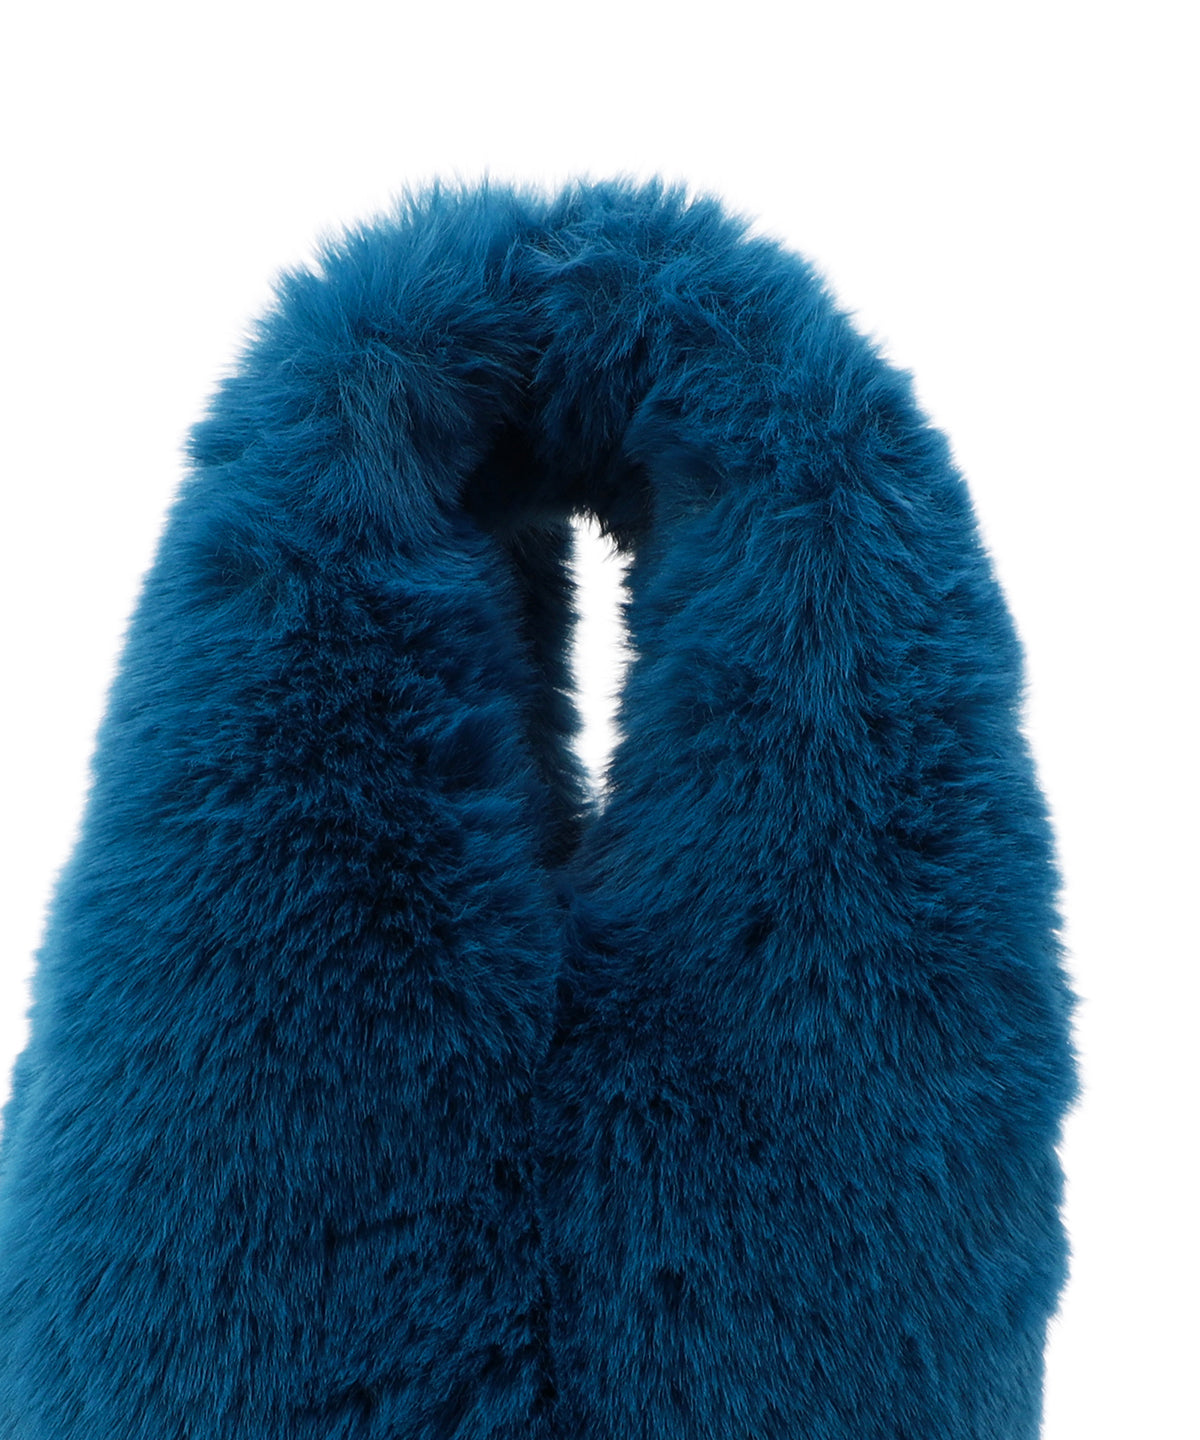 Eco Fur Convenience Bag (Small) E.BLUE